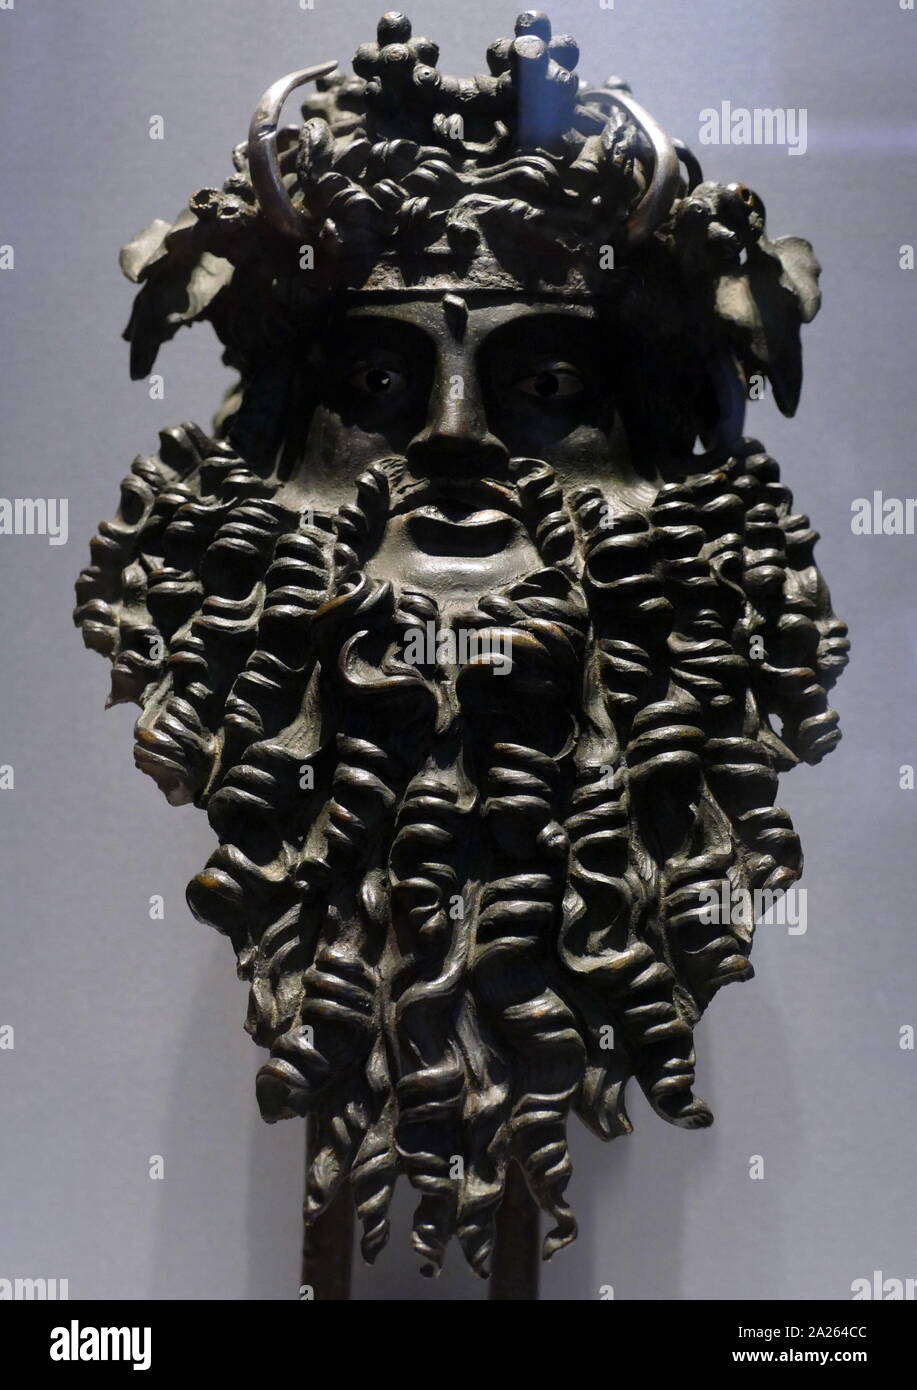 Die Maske des Dionysus-Osiris, Römische, 200 BC-AD 200. bronze Maske aus dem Griff eines Schiffes in der Kult des Dionysos, der Gott des Weines verwendet. Silber und Bronze markieren Sie die Augen, Hörner, und Lippen. Einmal im Besitz von Mead, jetzt im British Museum gehalten Stockfoto